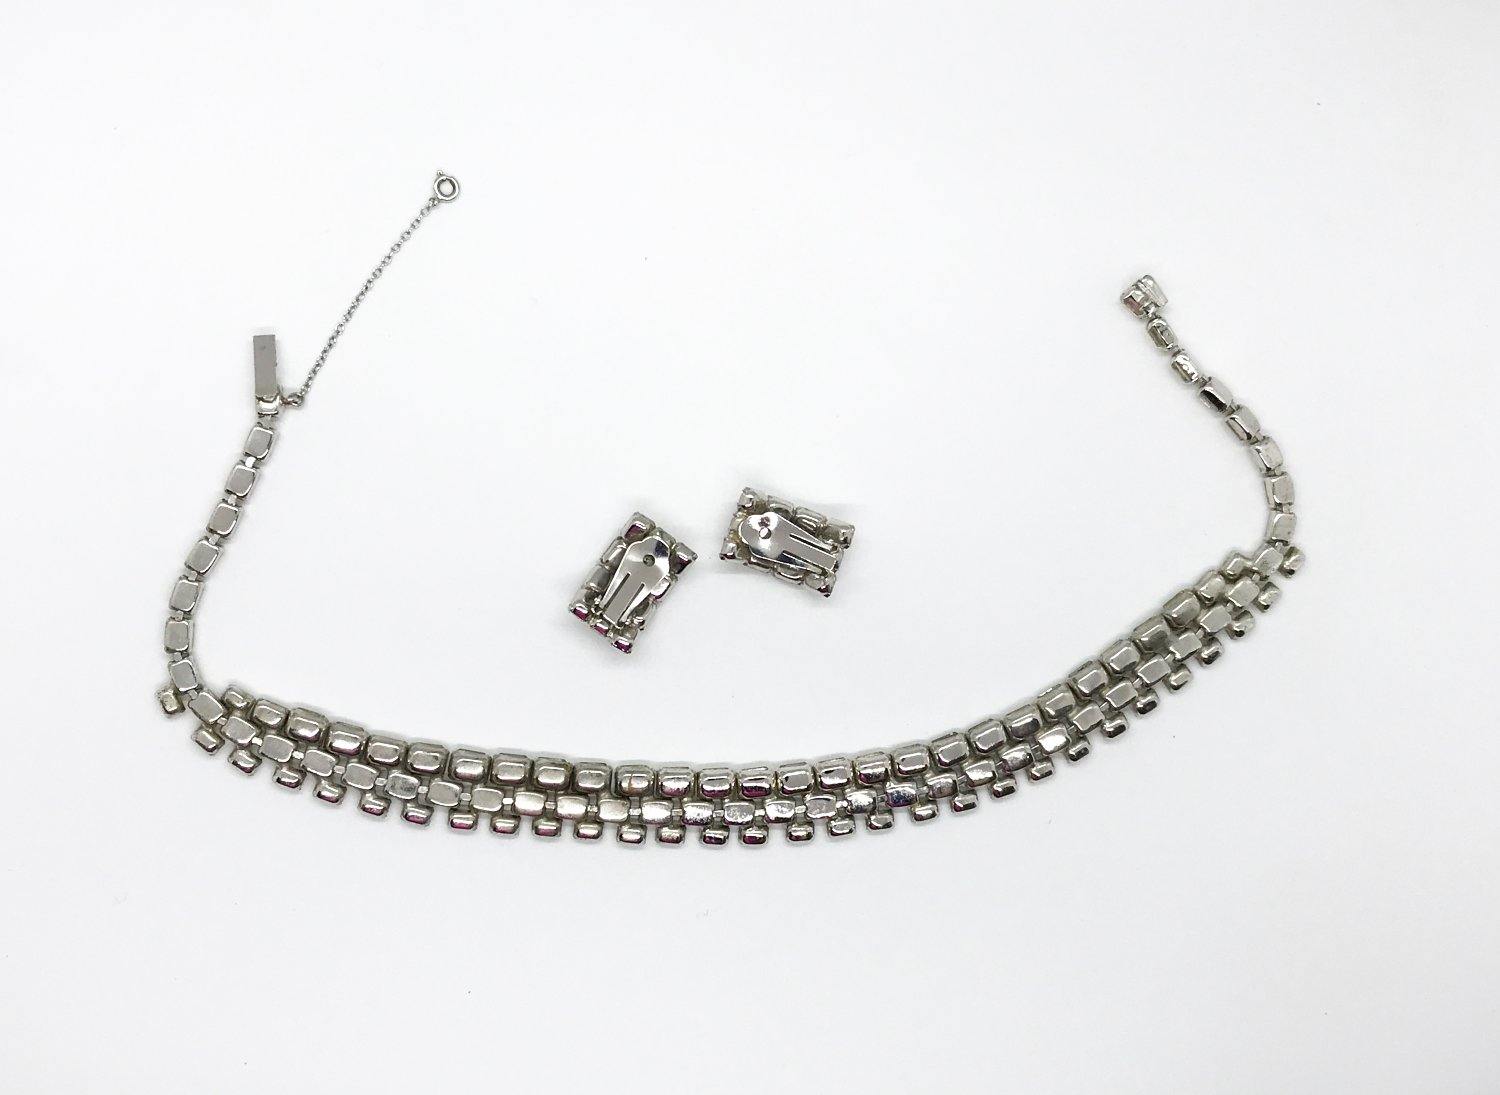 Stupendous Necklet - Necklace - Diamond